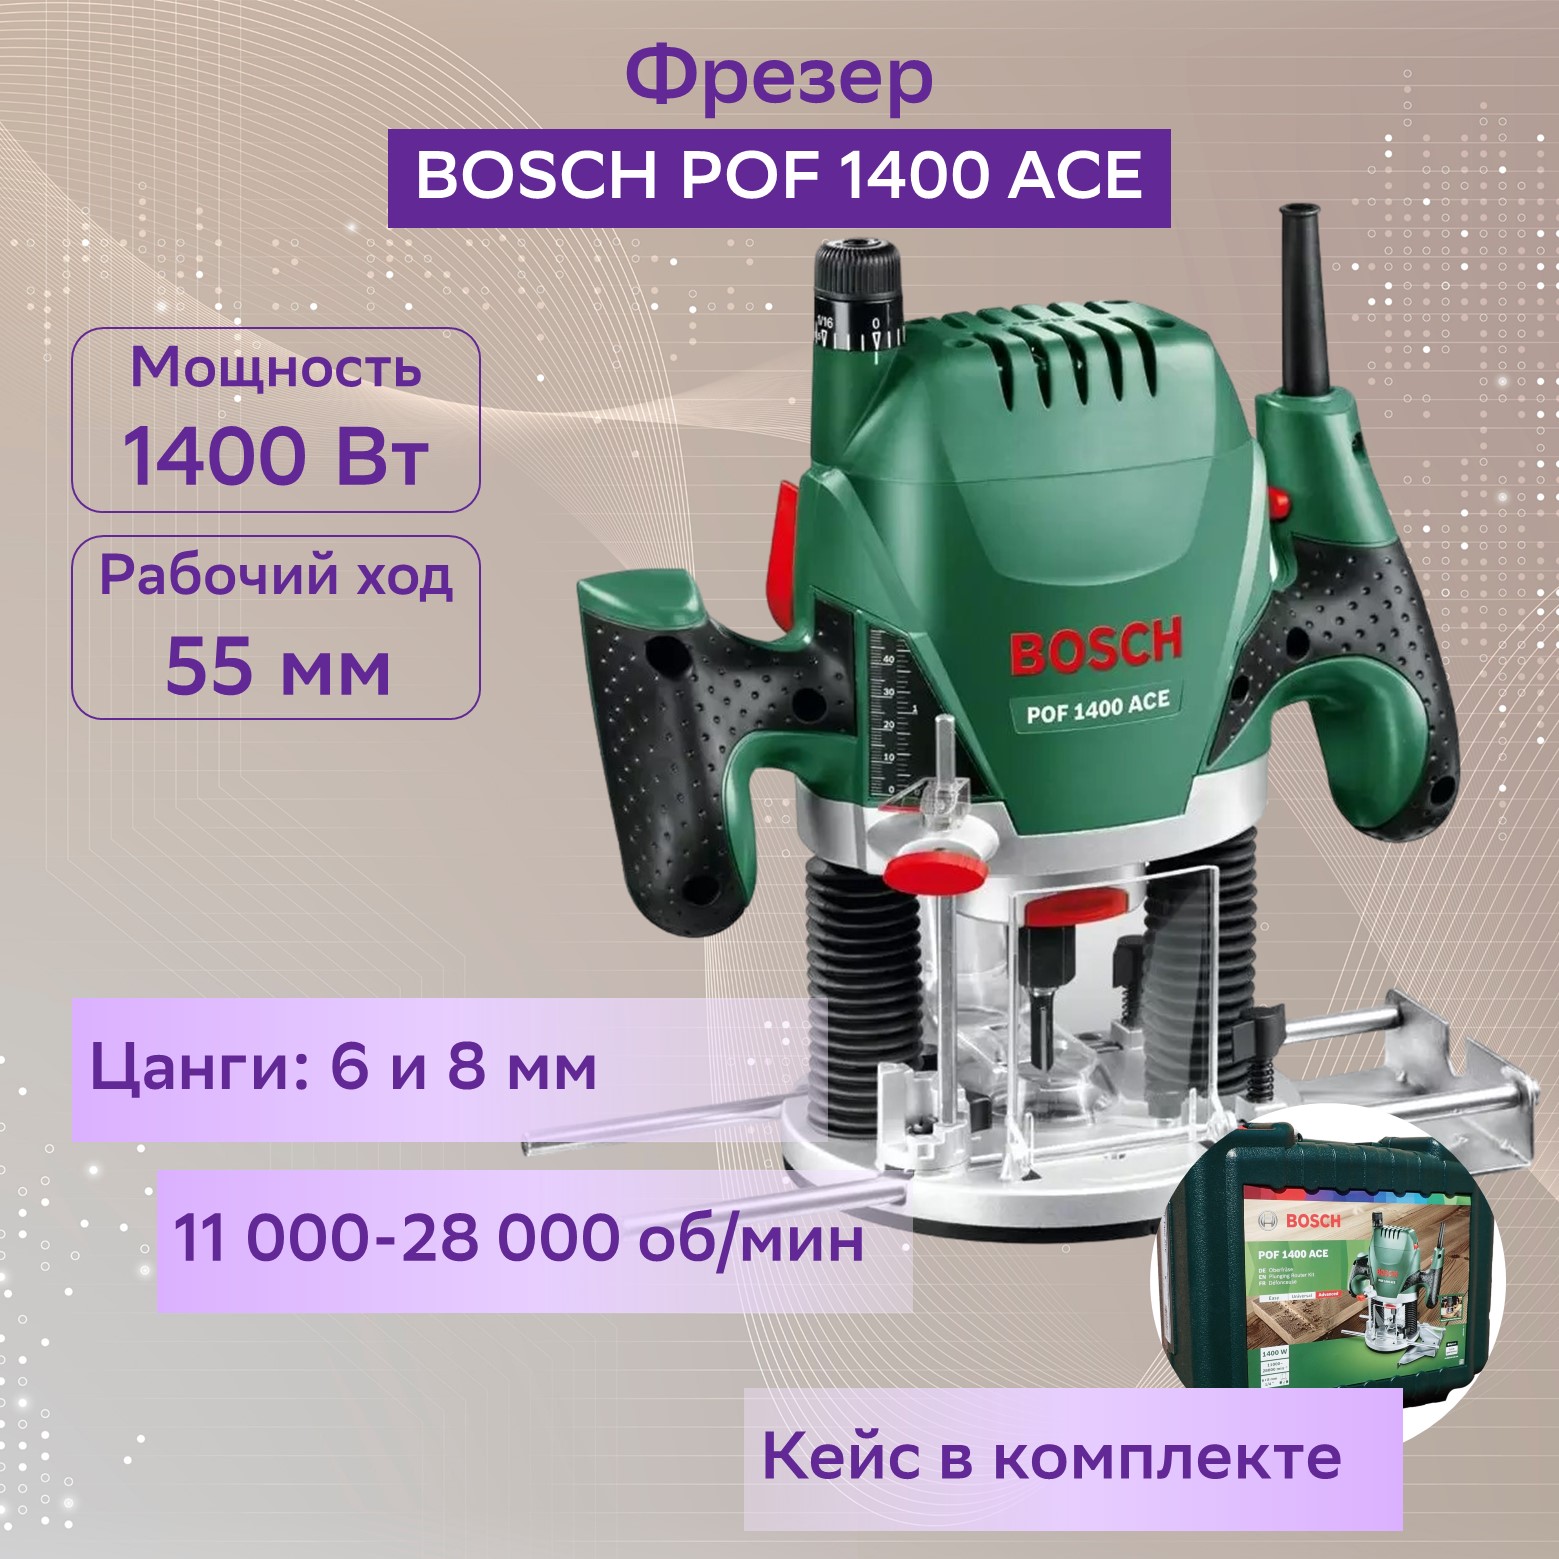 Сетевой фрезер Bosch POF 1400 ACE 060326C820 –  , цены в .